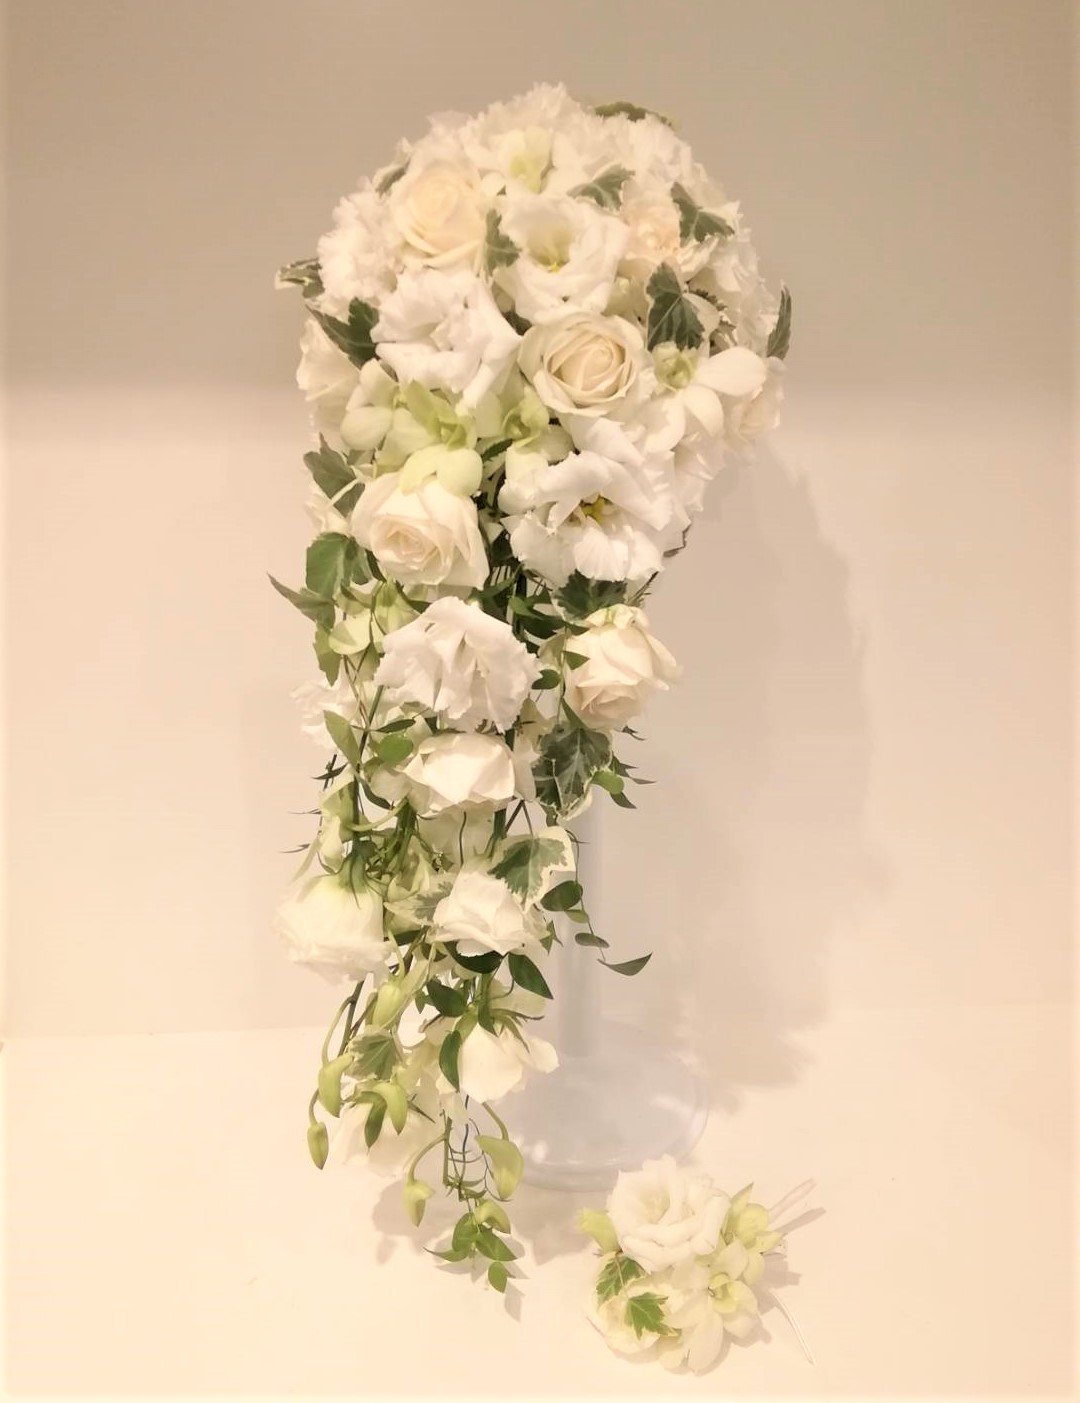 ウエディングブーケ16500円 フラワーギフト・花を贈るなら フラワーショップベビーブレス